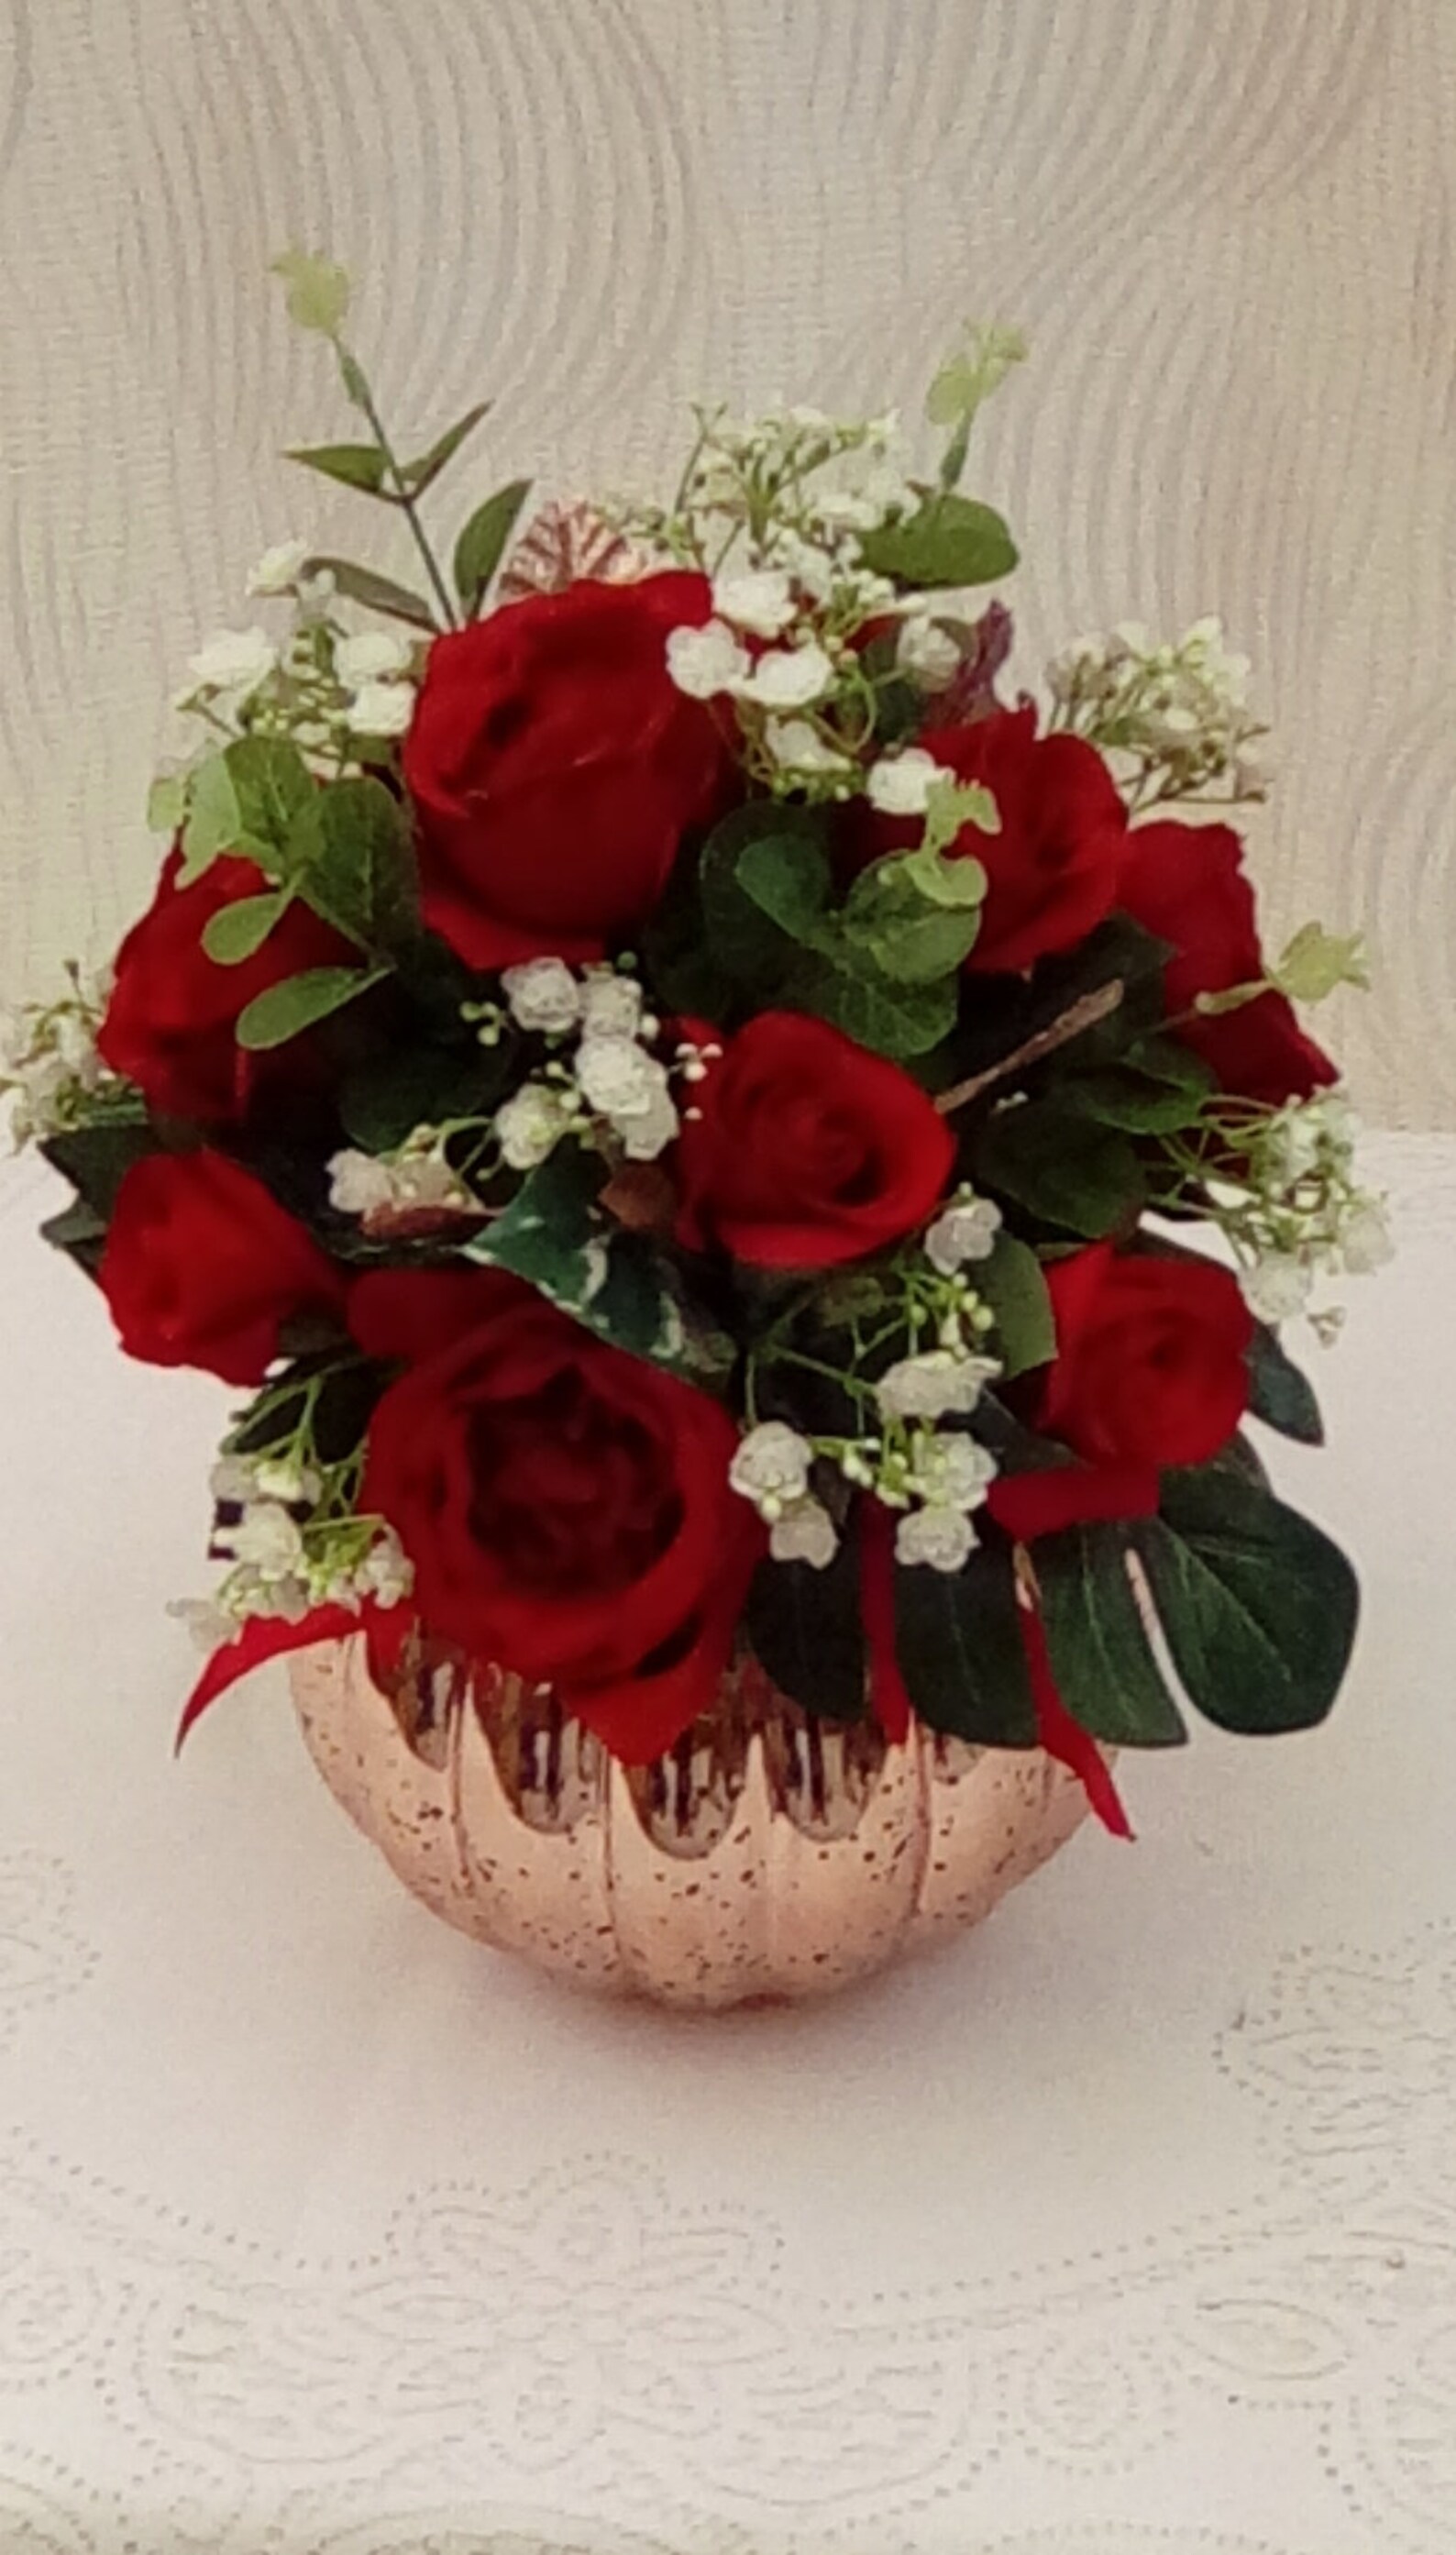 12 artificial red roses arrangement in rose gold vase | Etsy